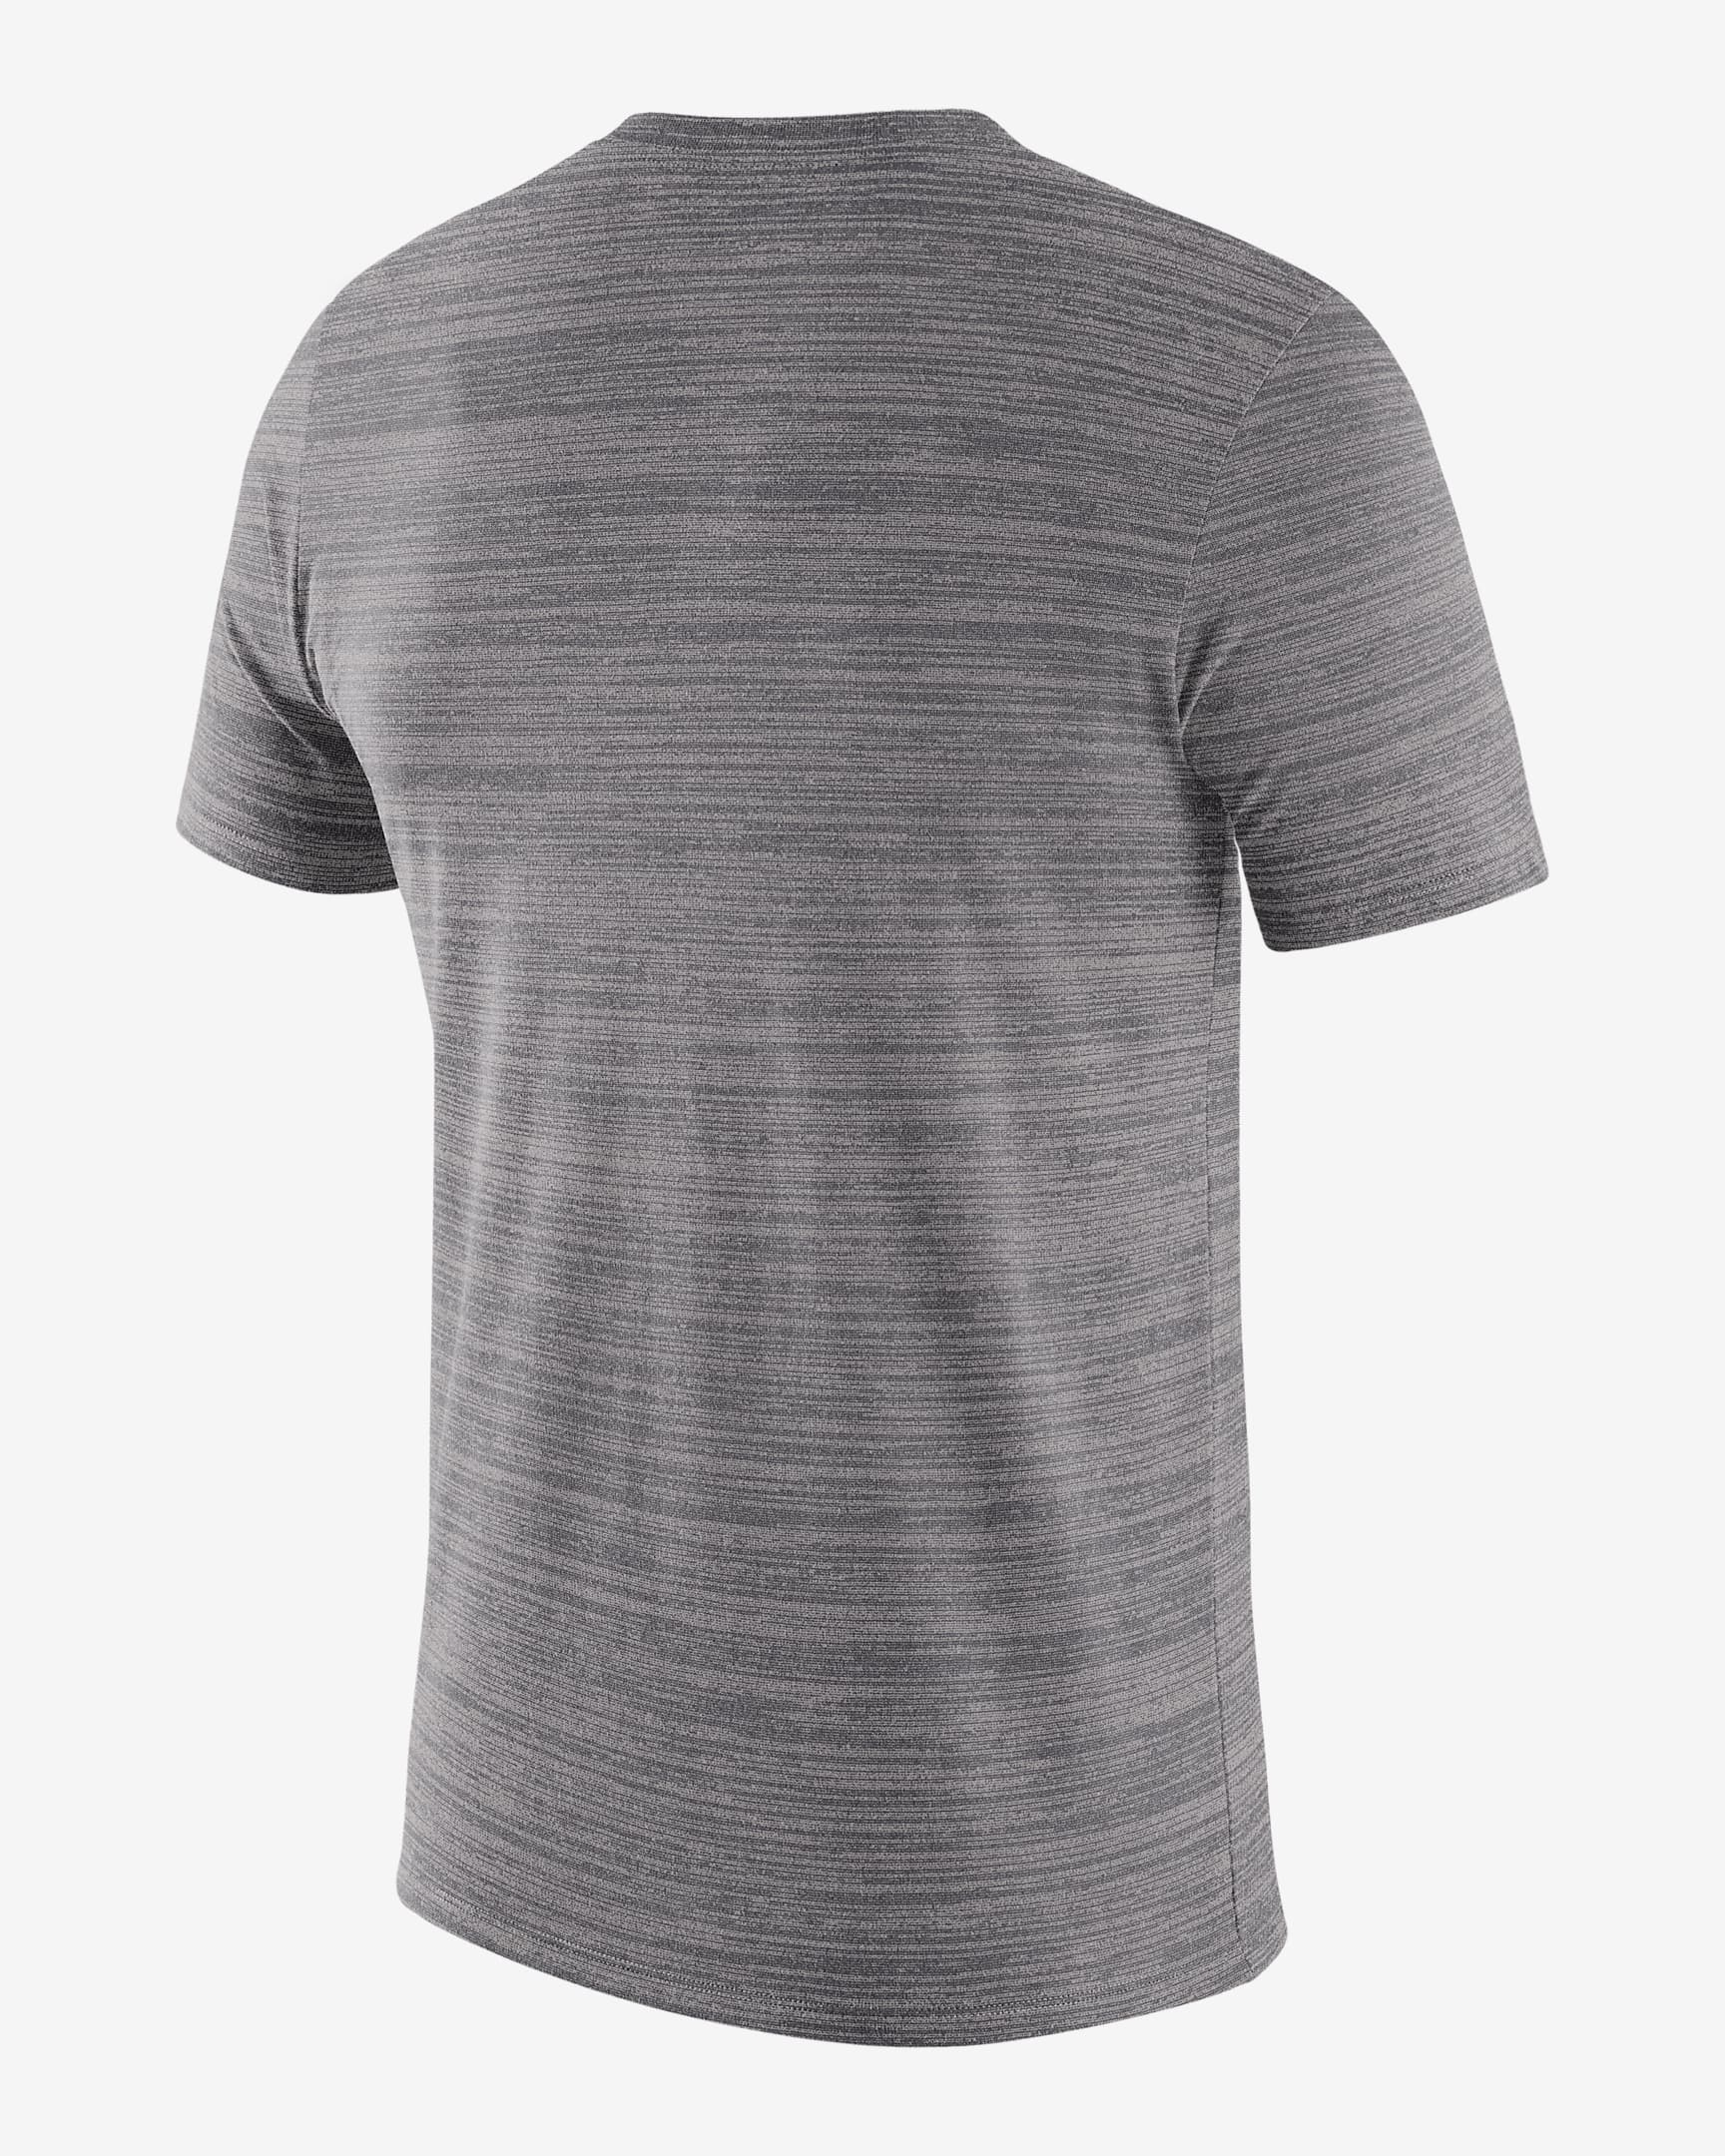 Nike College Dri-FIT Velocity (Duke) Men's T-Shirt. Nike.com